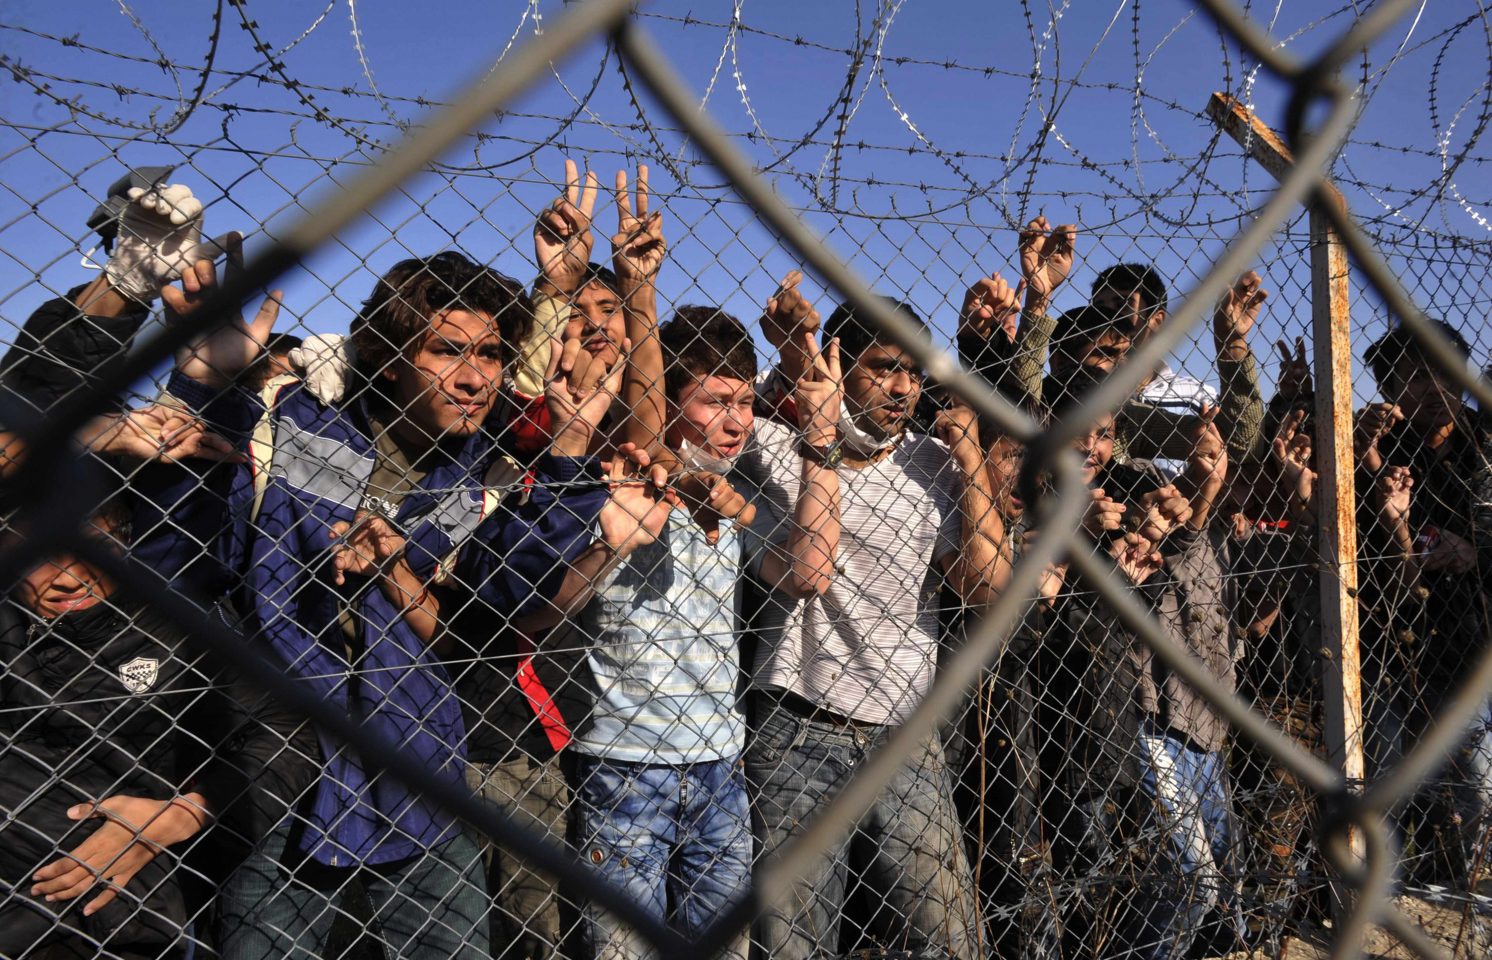 Σύλληψη 78 παράτυπων μεταναστών σε νταλίκες Τούρκων στην Σλοβακία – Είχε πληρώσει ο καθένας 500 δολάρια